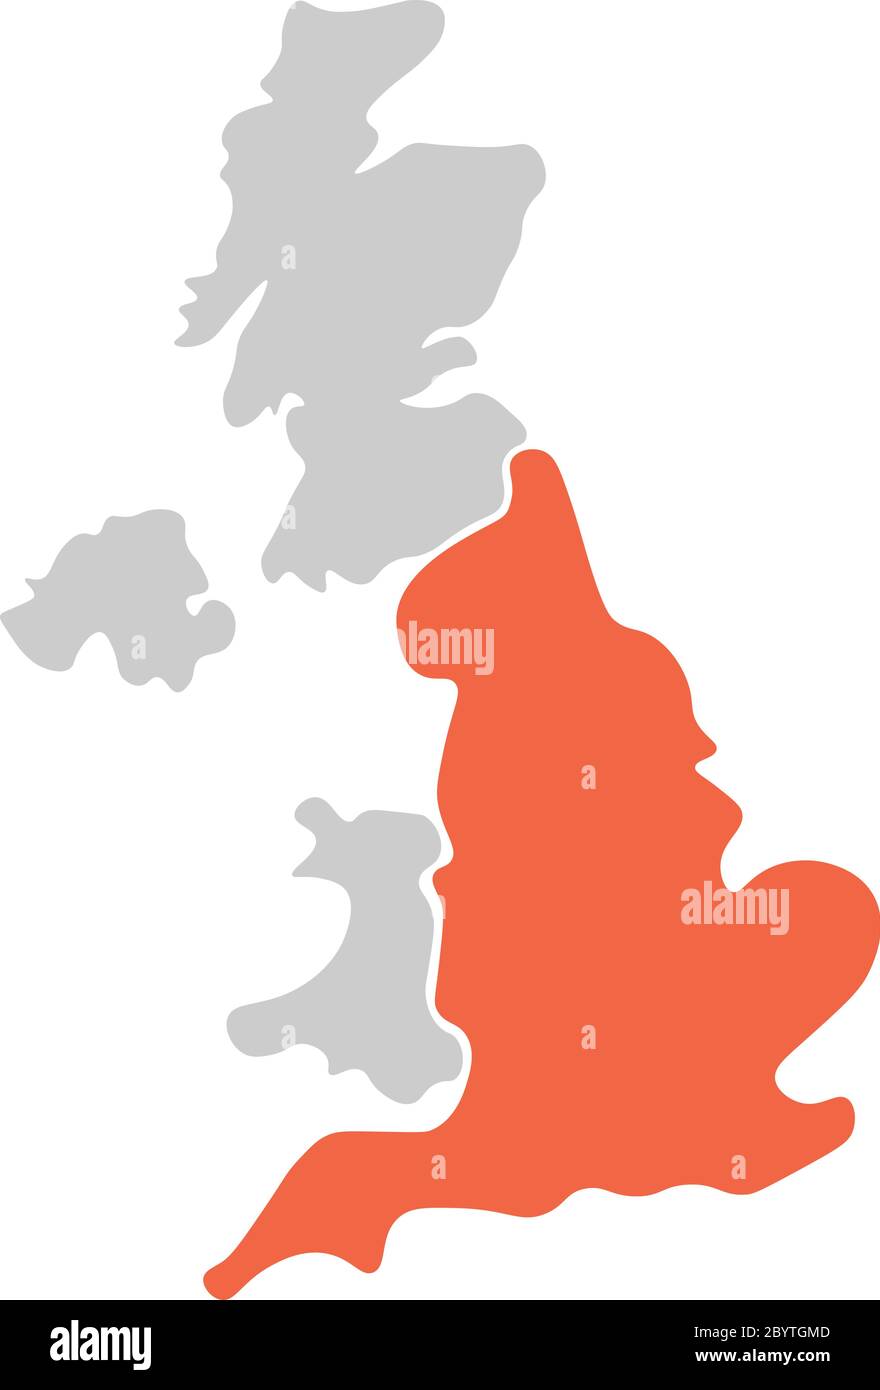 Vereinfachte, handgezeichnete, leere Karte des Vereinigten Königreichs von Großbritannien und Nordirland, Großbritannien. Aufgeteilt in vier Länder mit rot hervorgehobener England-Farbe. Einfache flache Vektorgrafik. Stock Vektor